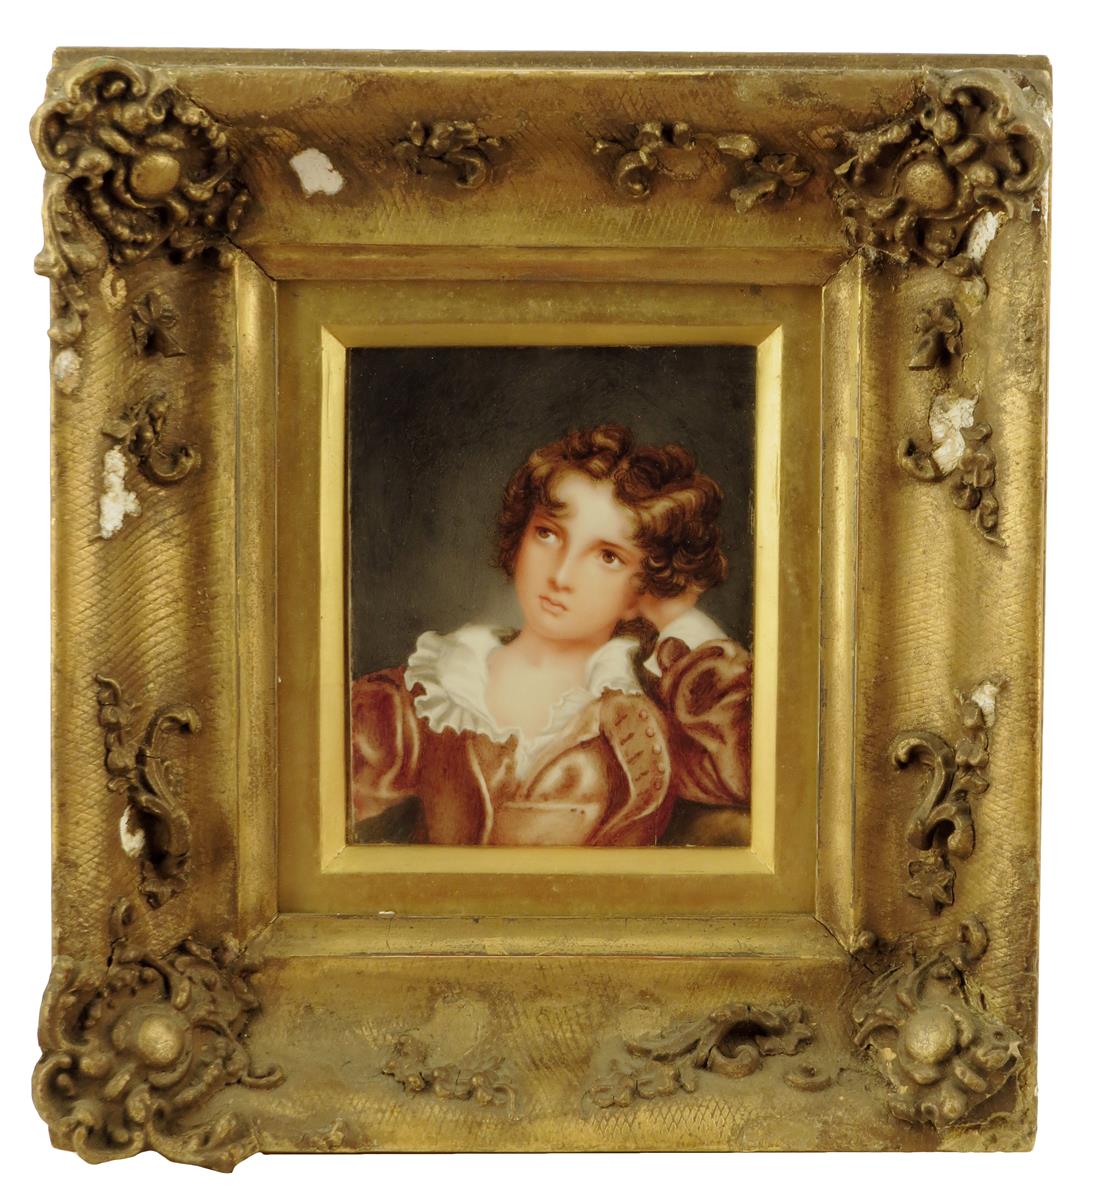 λ Three late Victorian miniatures on ivory, one of a young boy, one of a love sick young girl, the